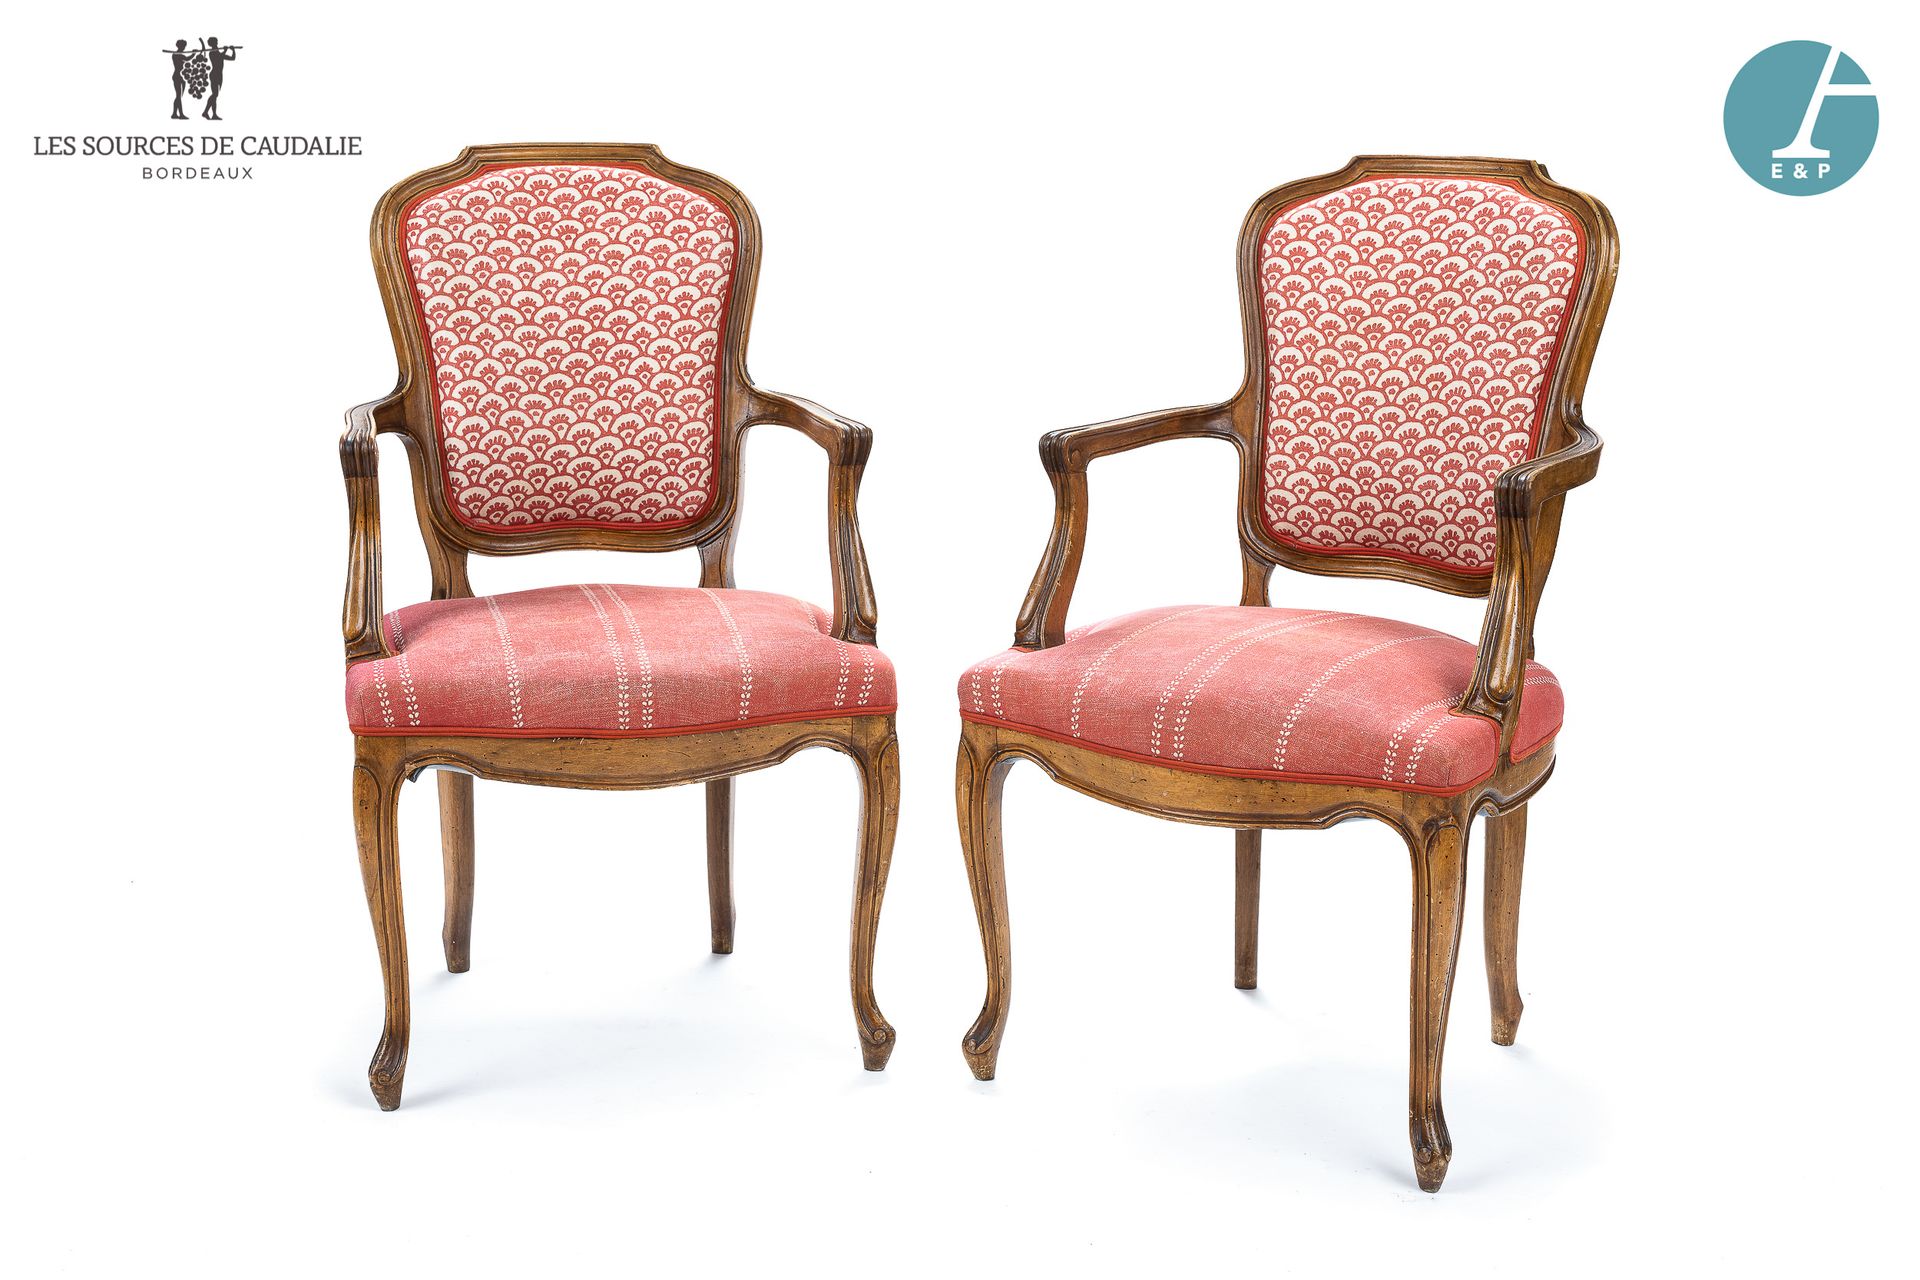 Null 从10号房间 "Les Acabailles "开始

一对卡布利奥扶手椅，采用天然模制和雕刻的木头，室内装饰为老玫瑰和白色织物。路易十五风格。

高&hellip;